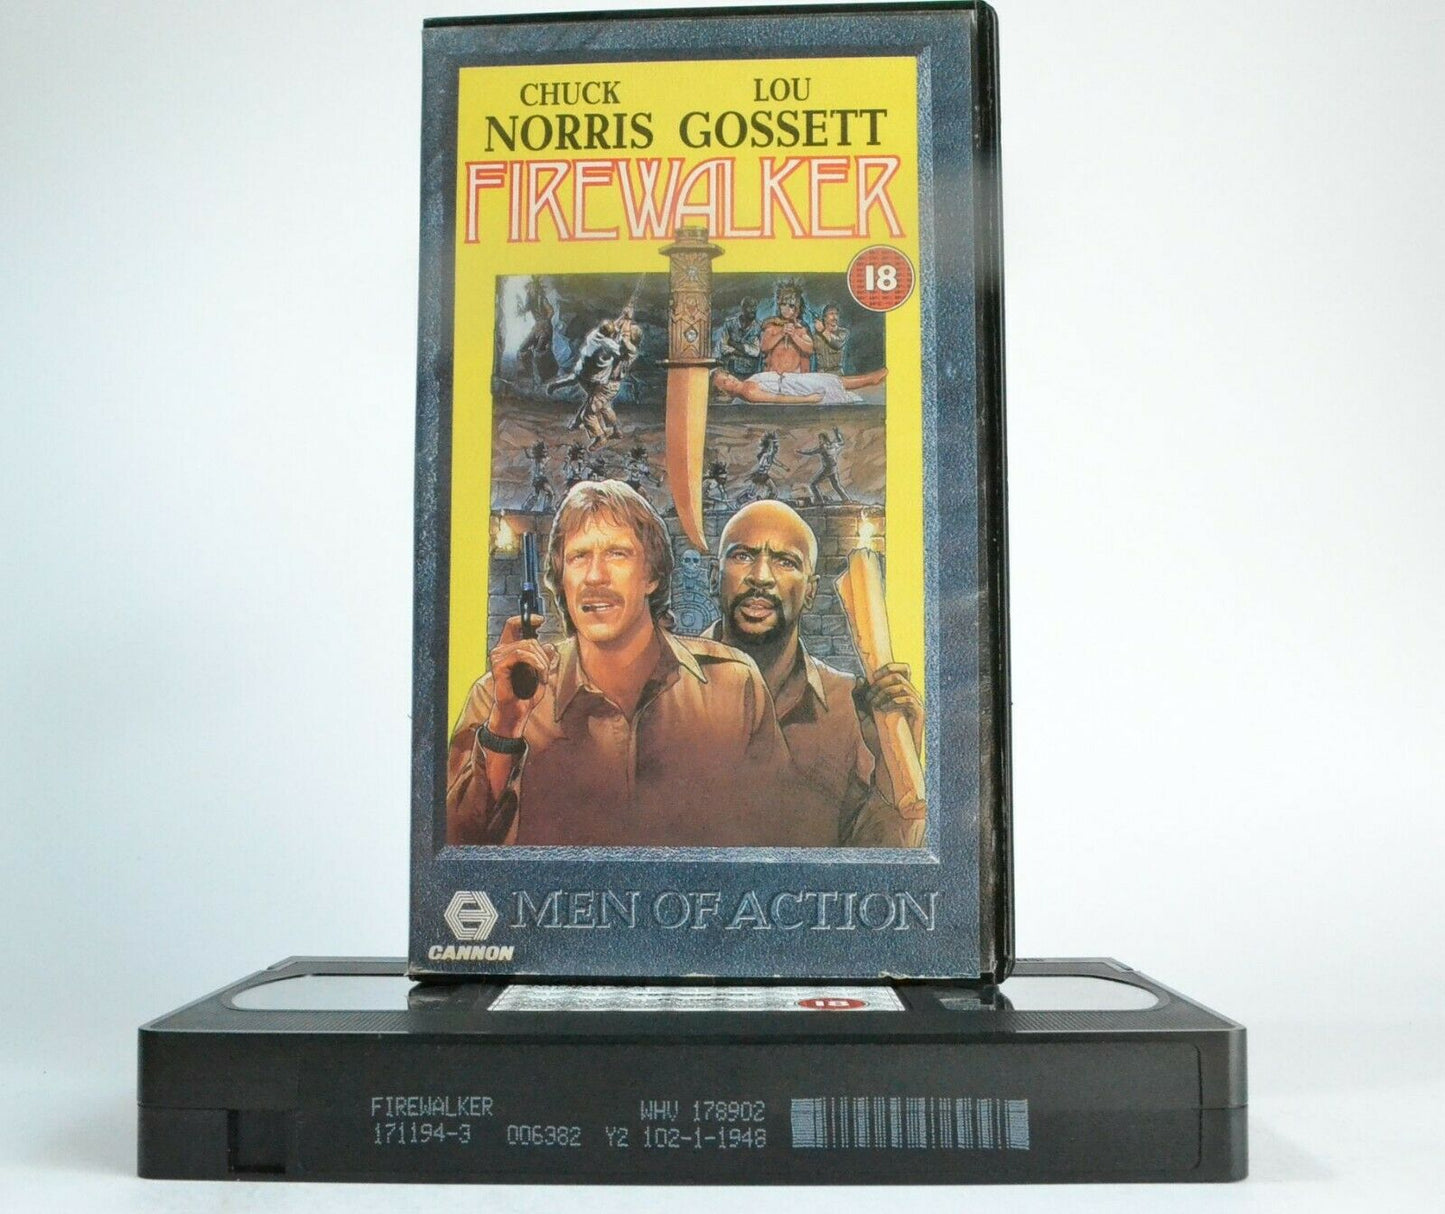 Firewalker: Action Adventure Comedy - Chuck Norris/Louis Gossett,Jr. - Pal VHS-